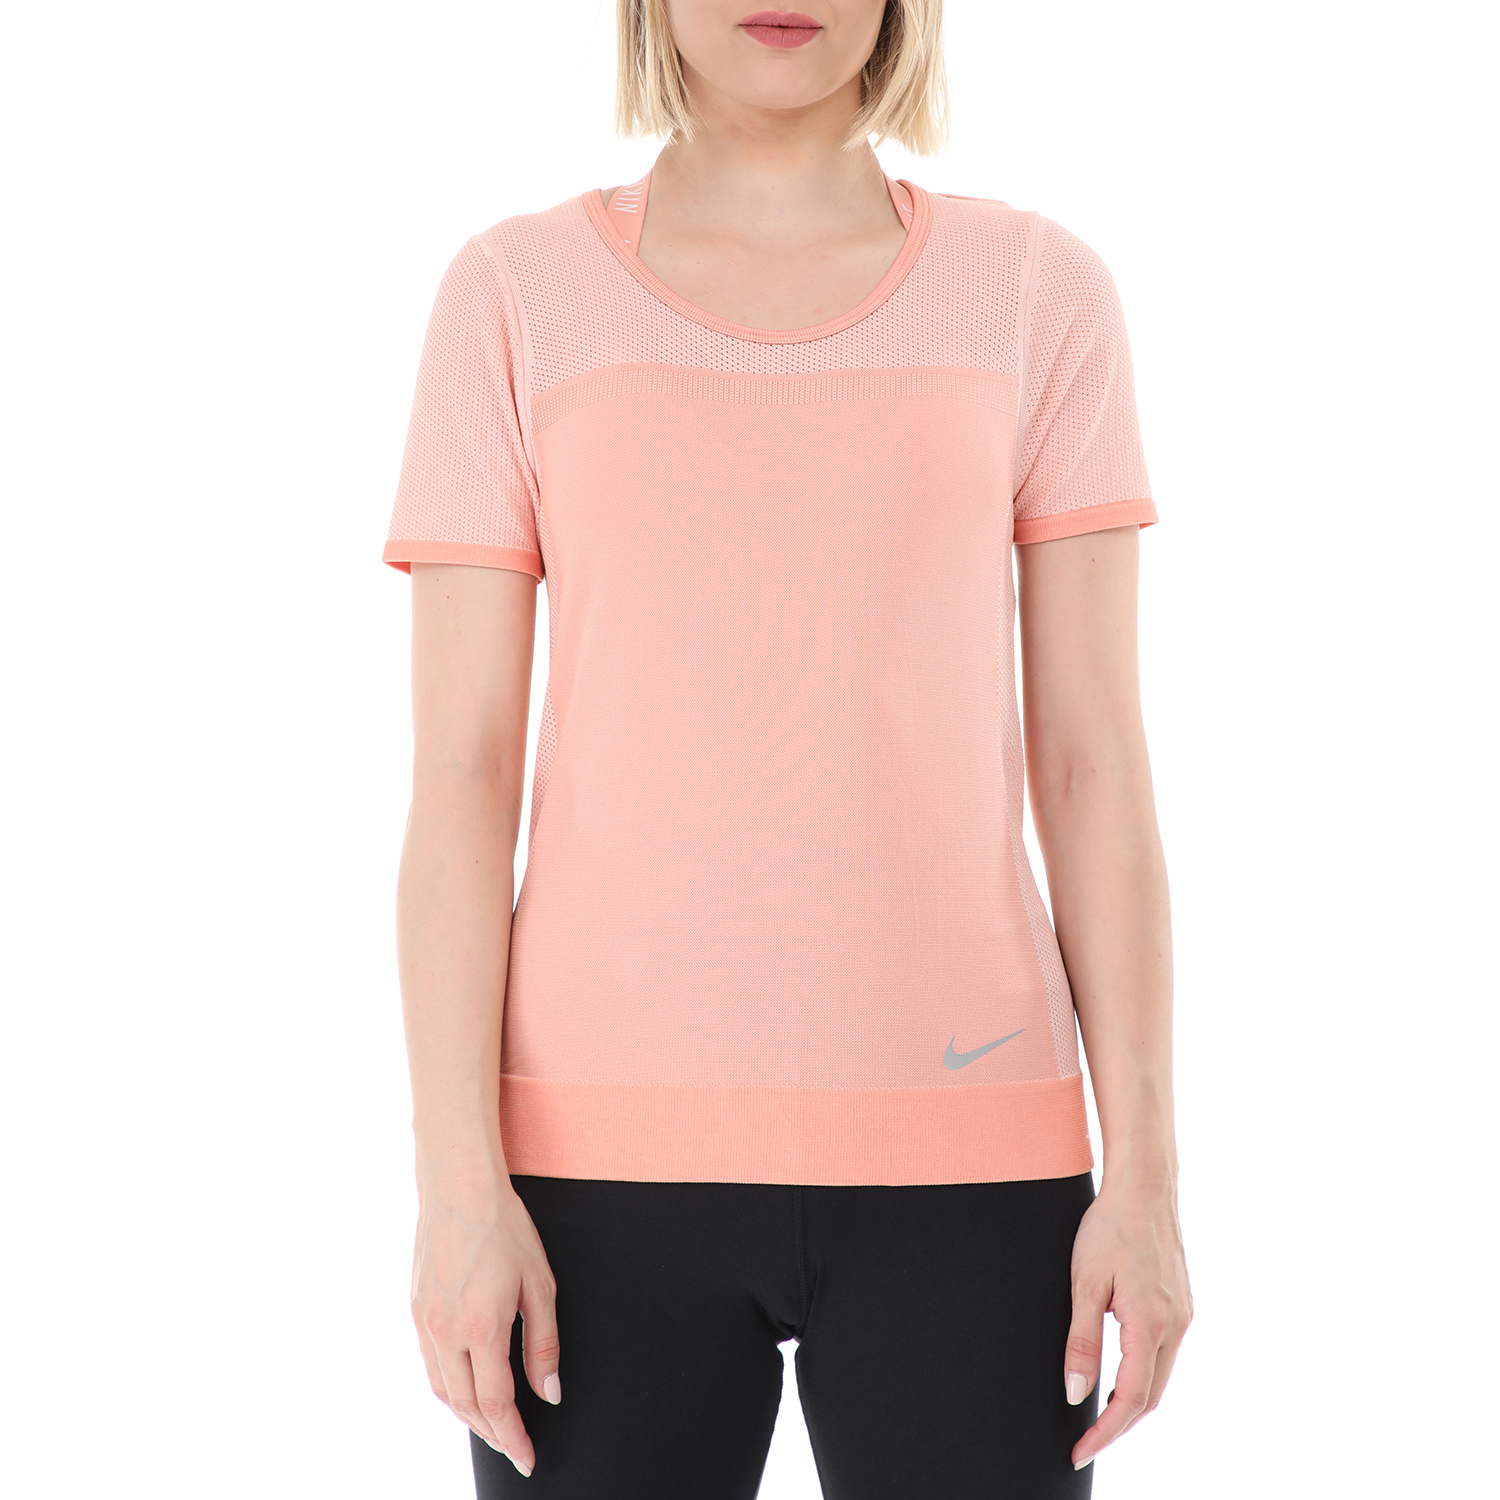 Γυναικεία/Ρούχα/Αθλητικά/T-shirt-Τοπ NIKE - Γυναικείο αθλητικό t-shirt NIKE INFINITE TOP ροζ